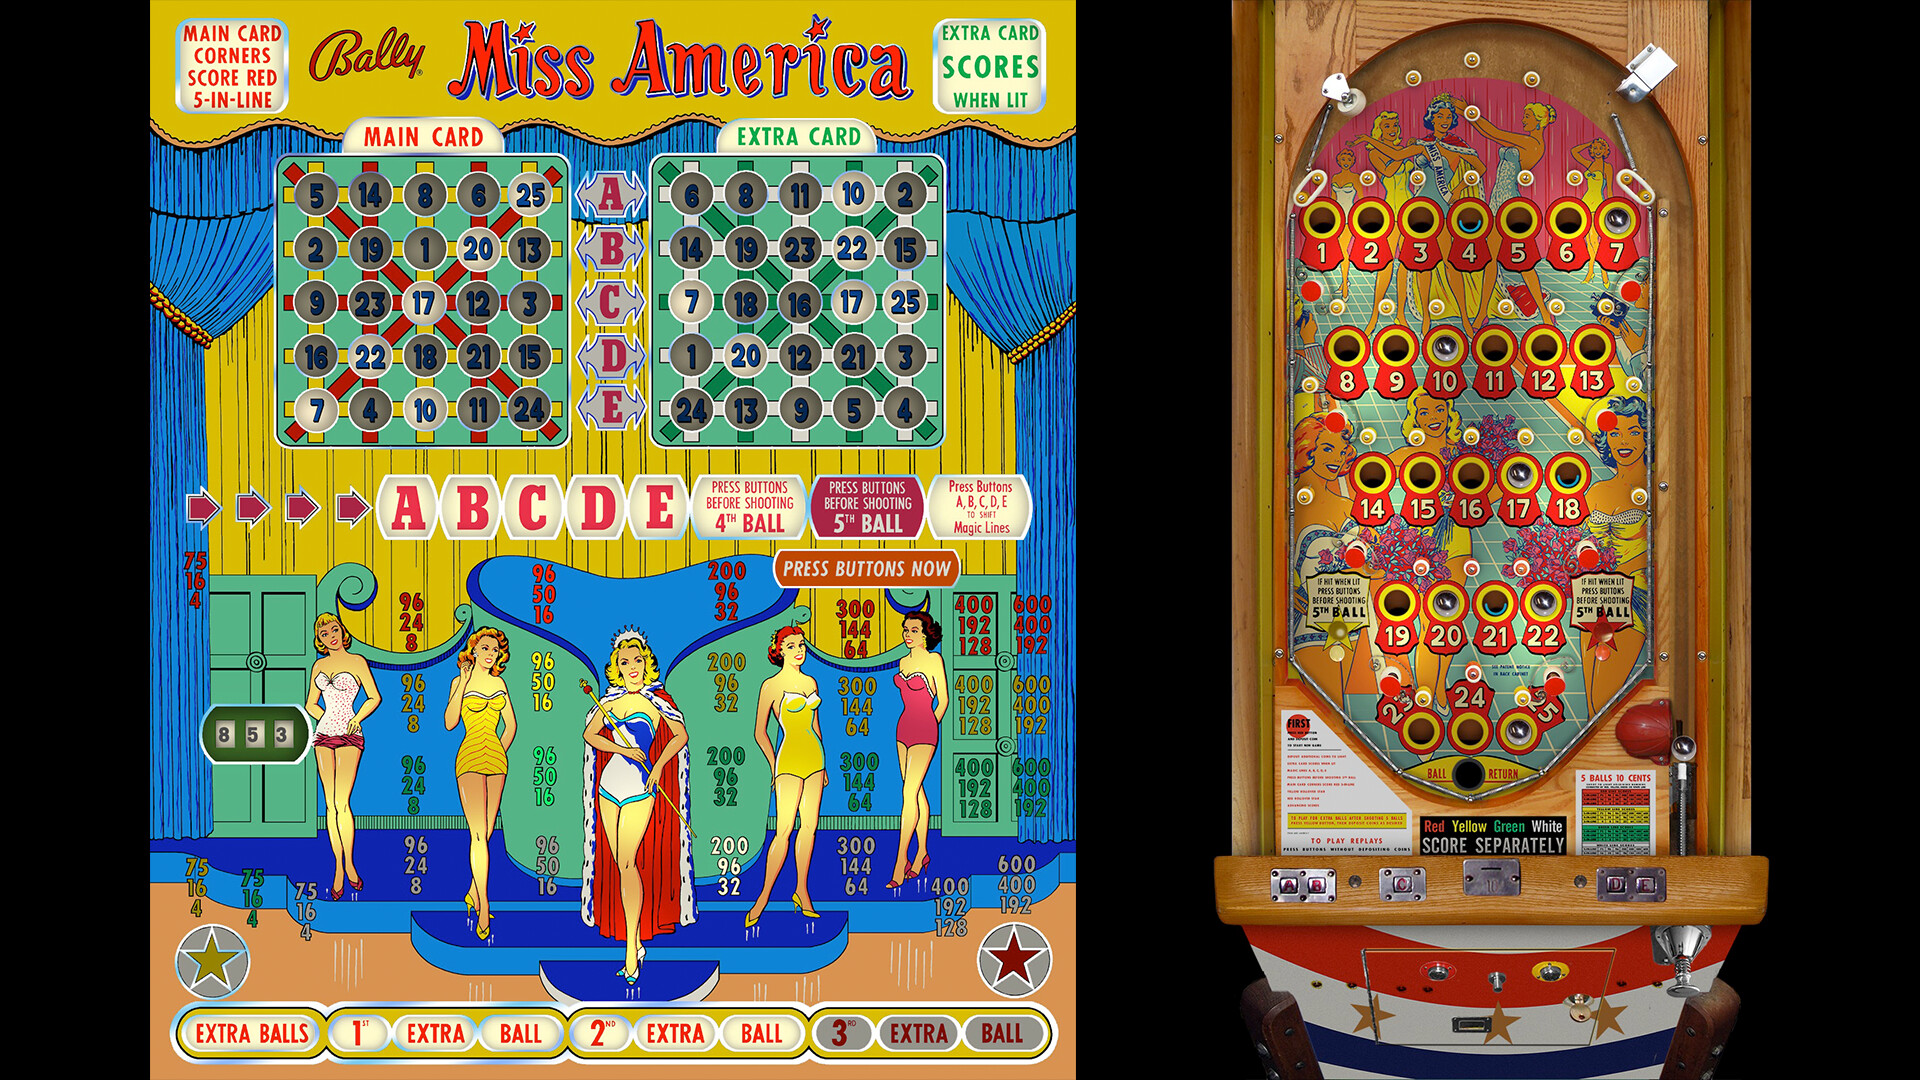 Bingo Pinball Gameroom - Bally Miss America Featured Screenshot #1